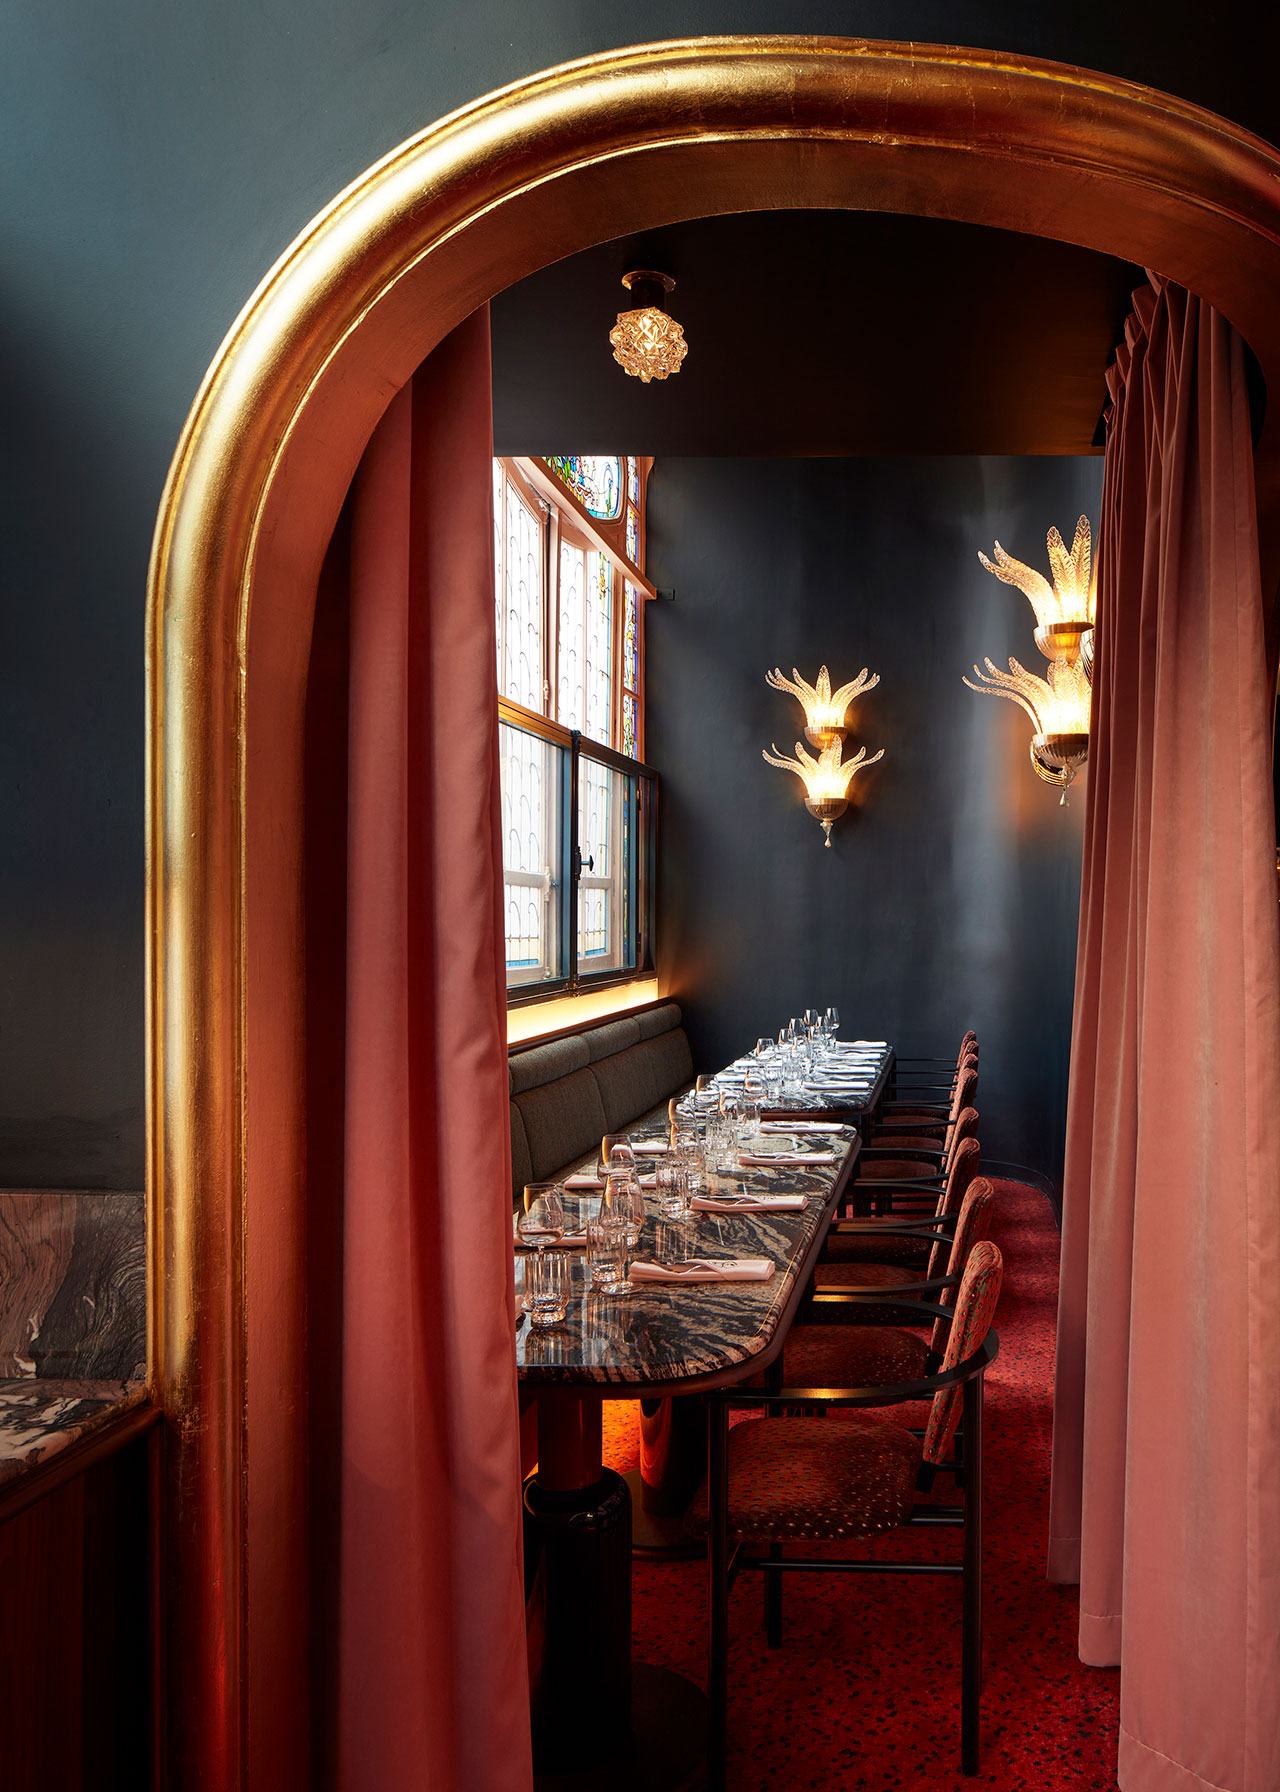 art deco aesthetic - restaurant Mistinguett by Atelier Ha